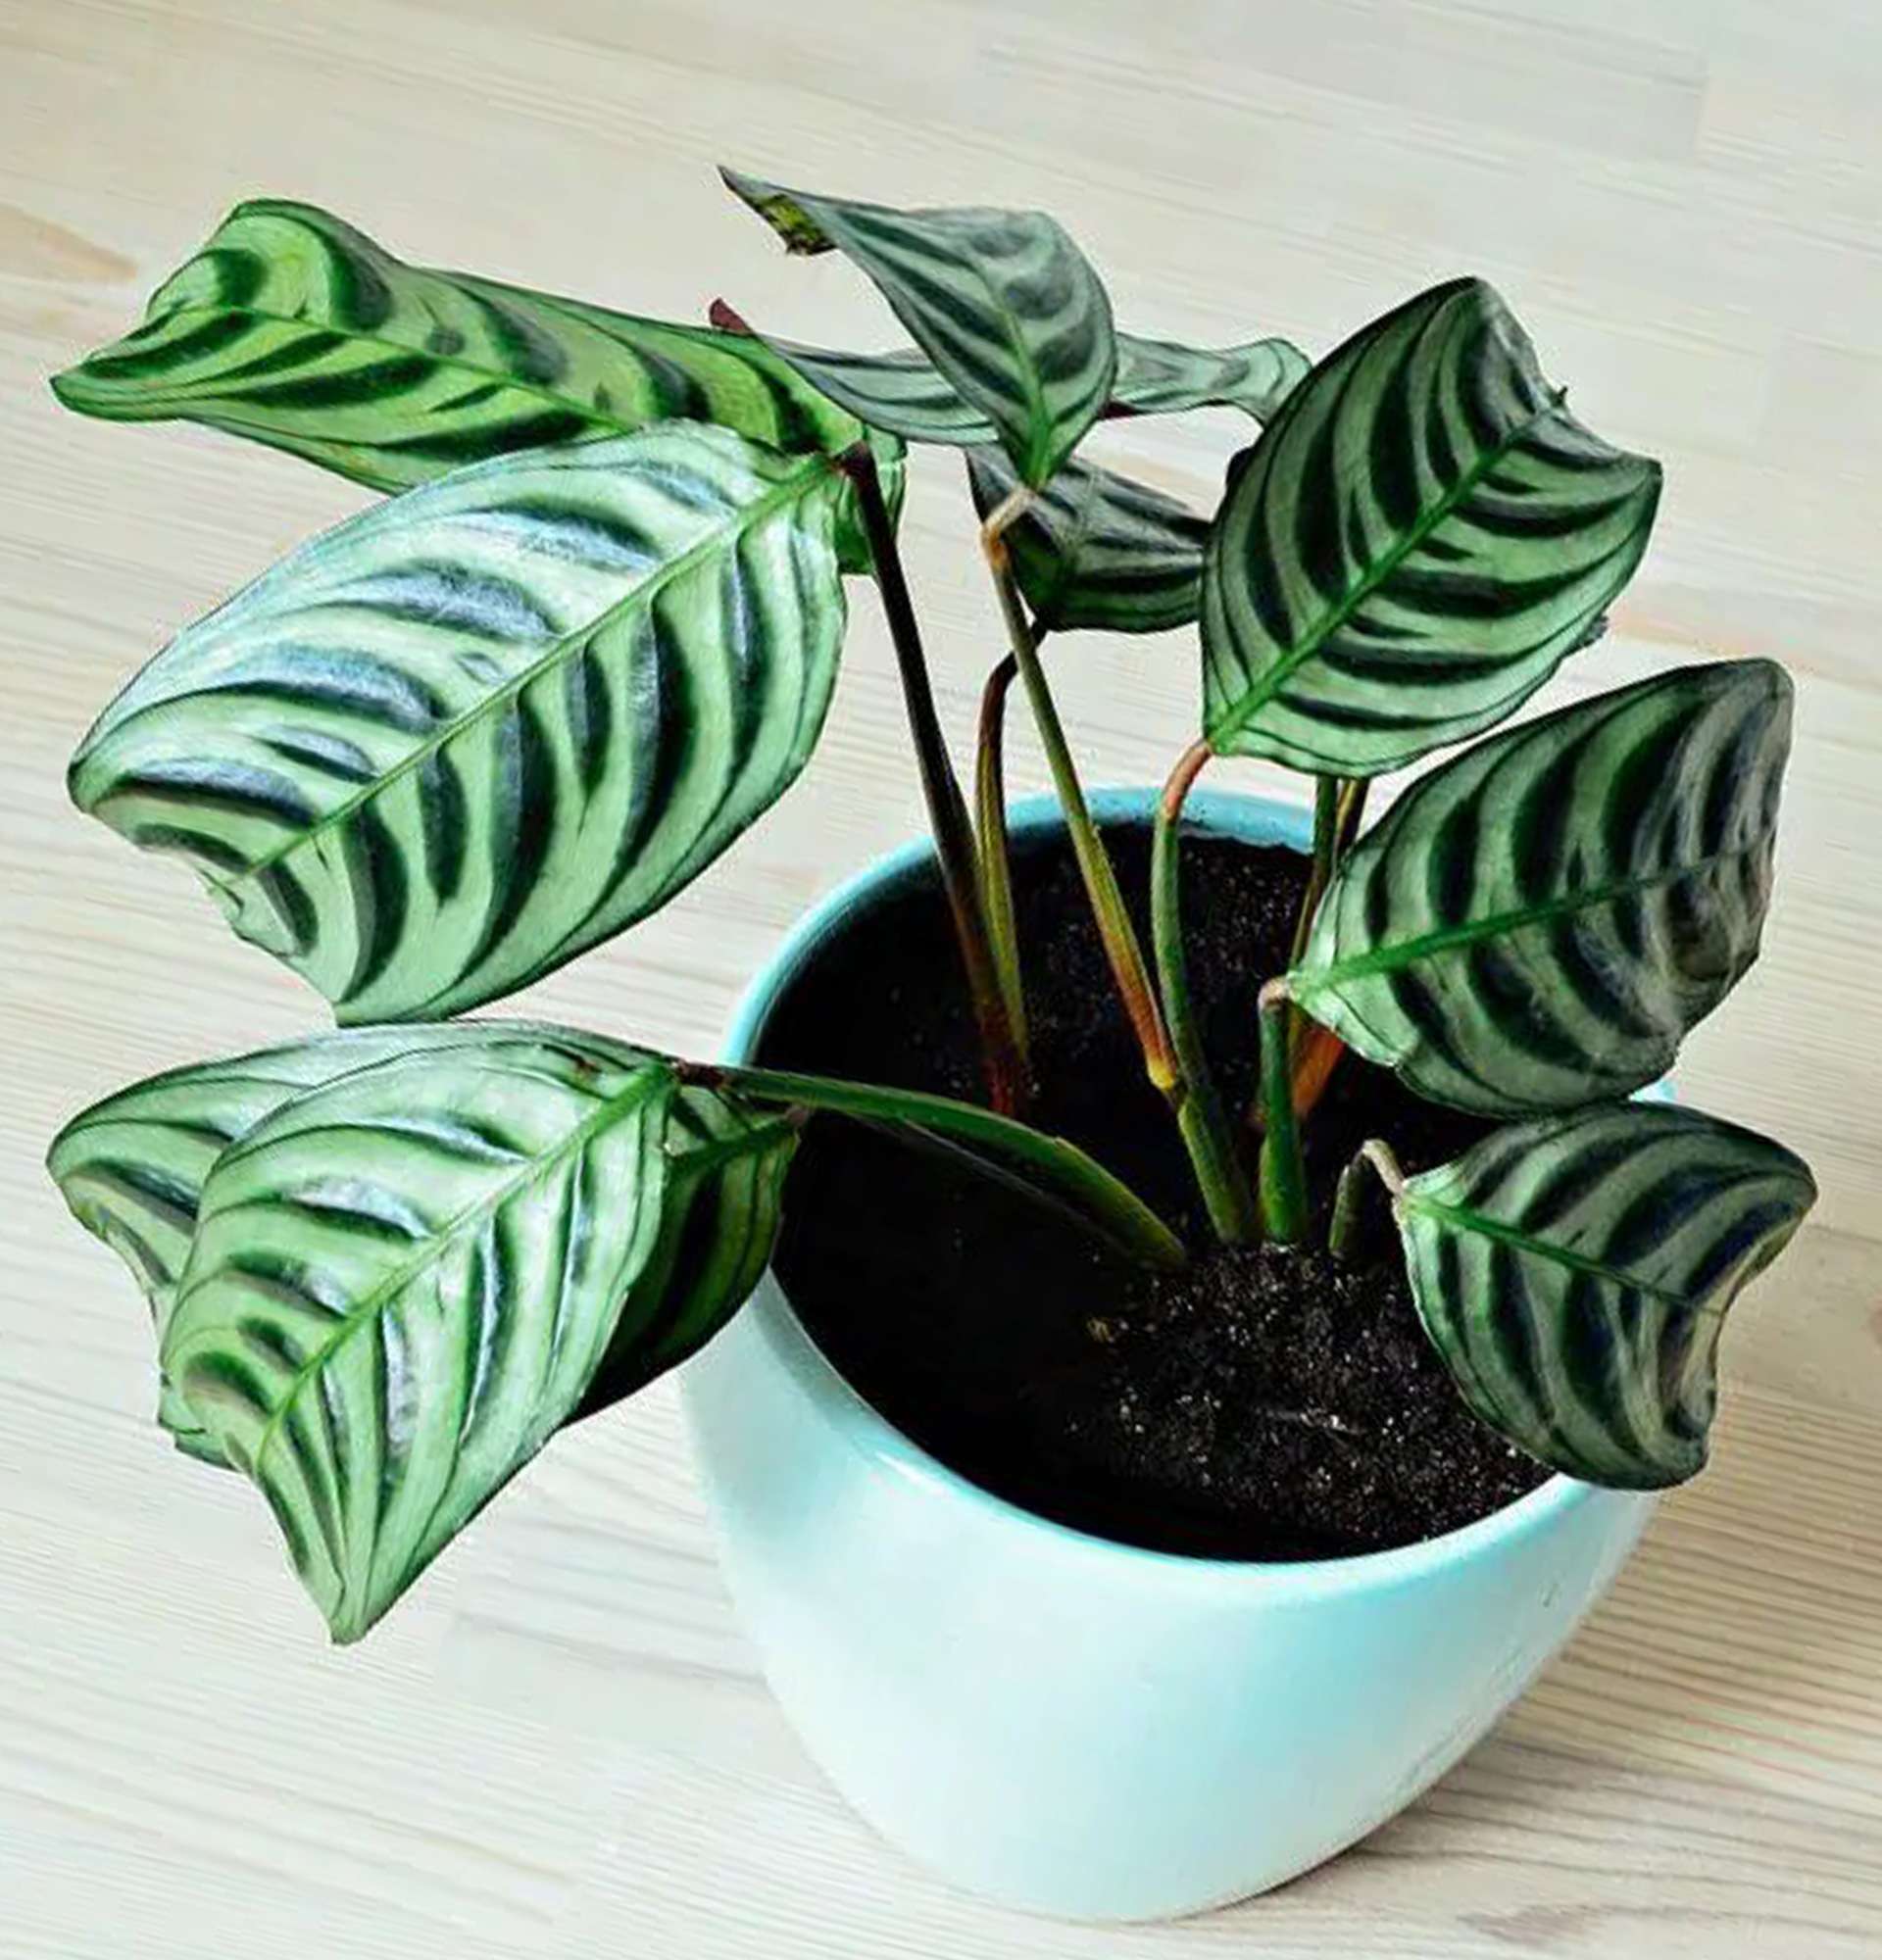  ктенанта - кімнатна рослина з біло-зеленим листям